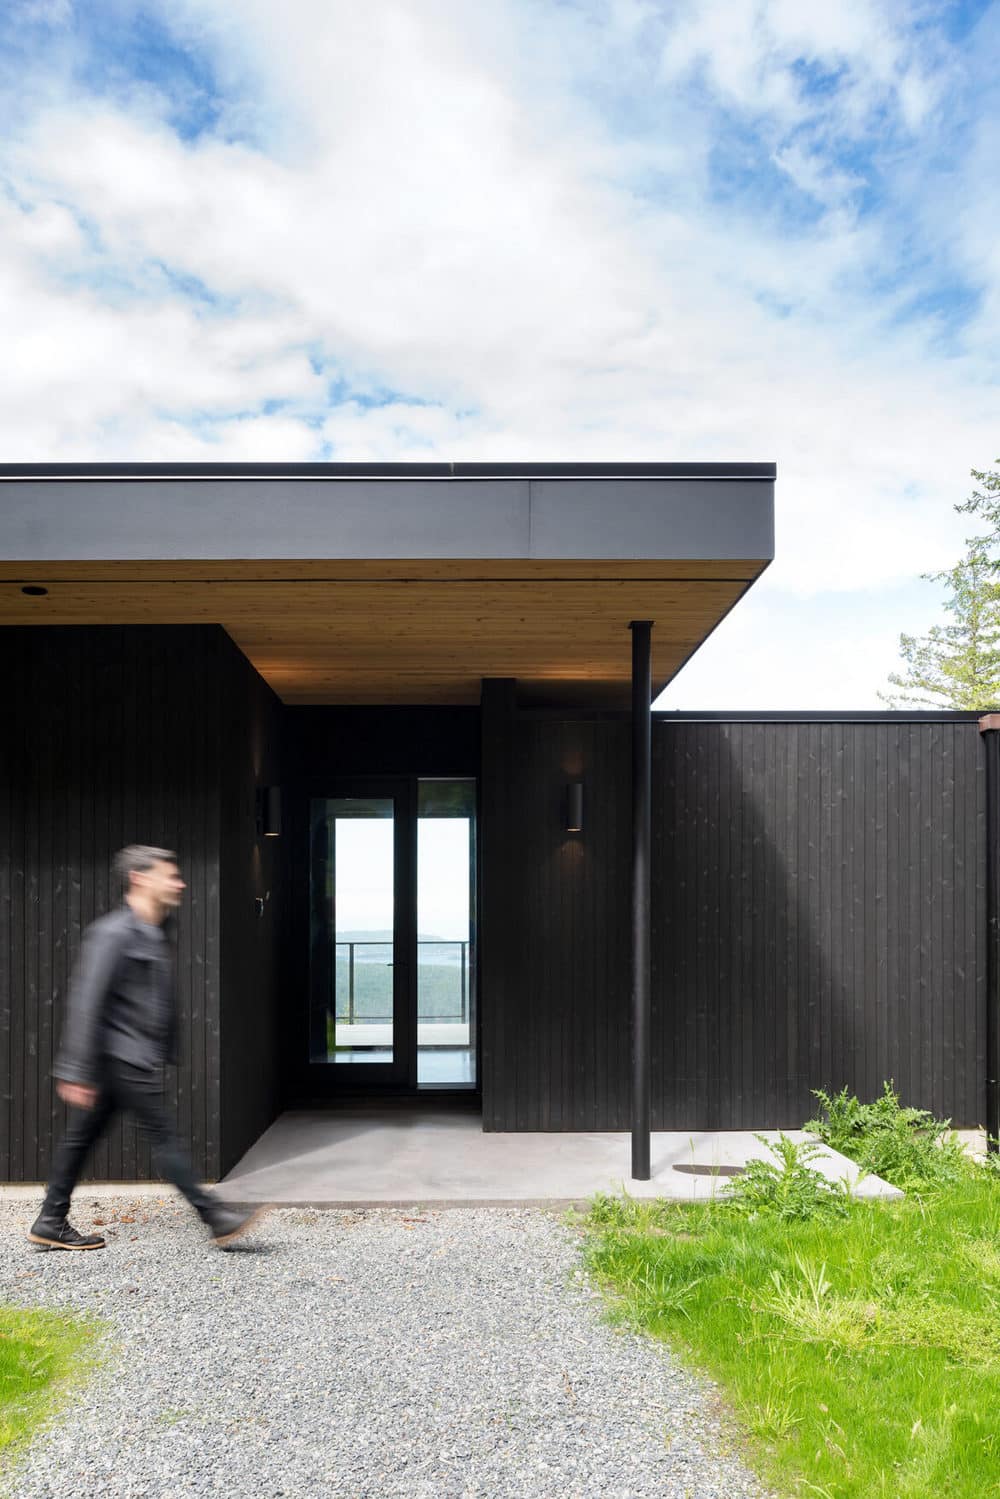 Raven Ridge Cabin by W O V E N Architecture and Design